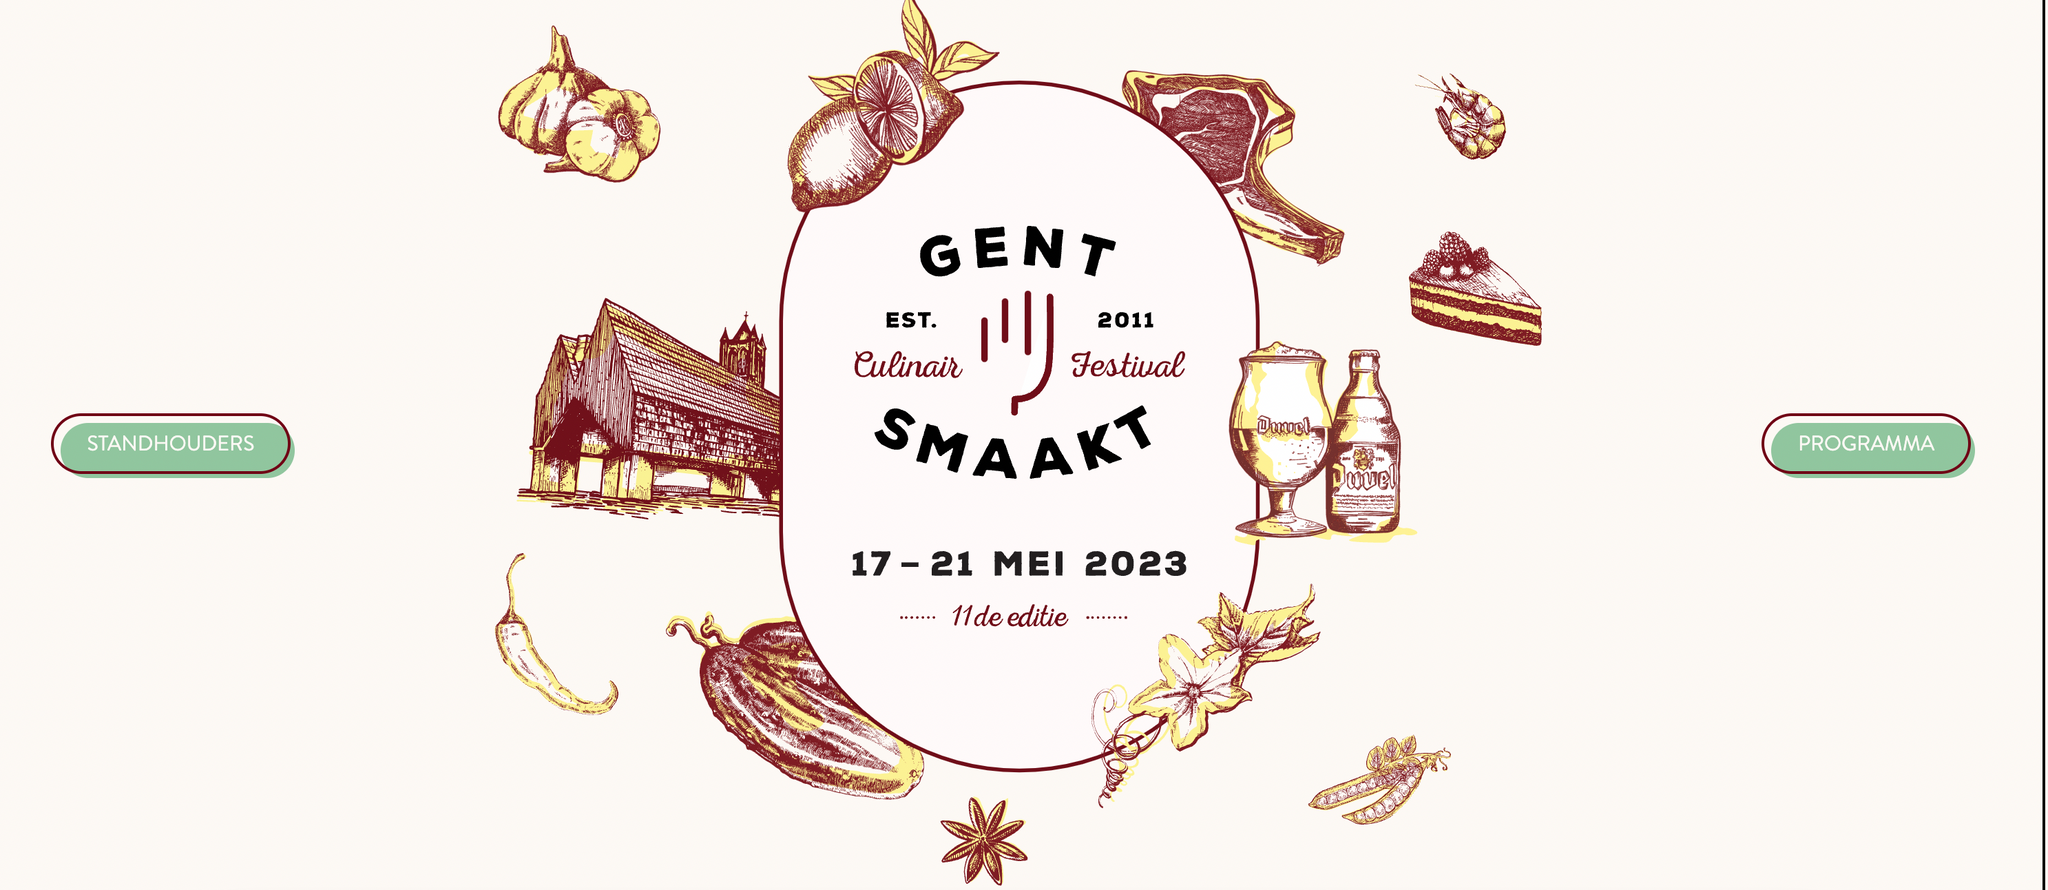 Wij verwennen jullie 5 dagen lang op Gent Smaakt van 17 mei tot 21 mei '23